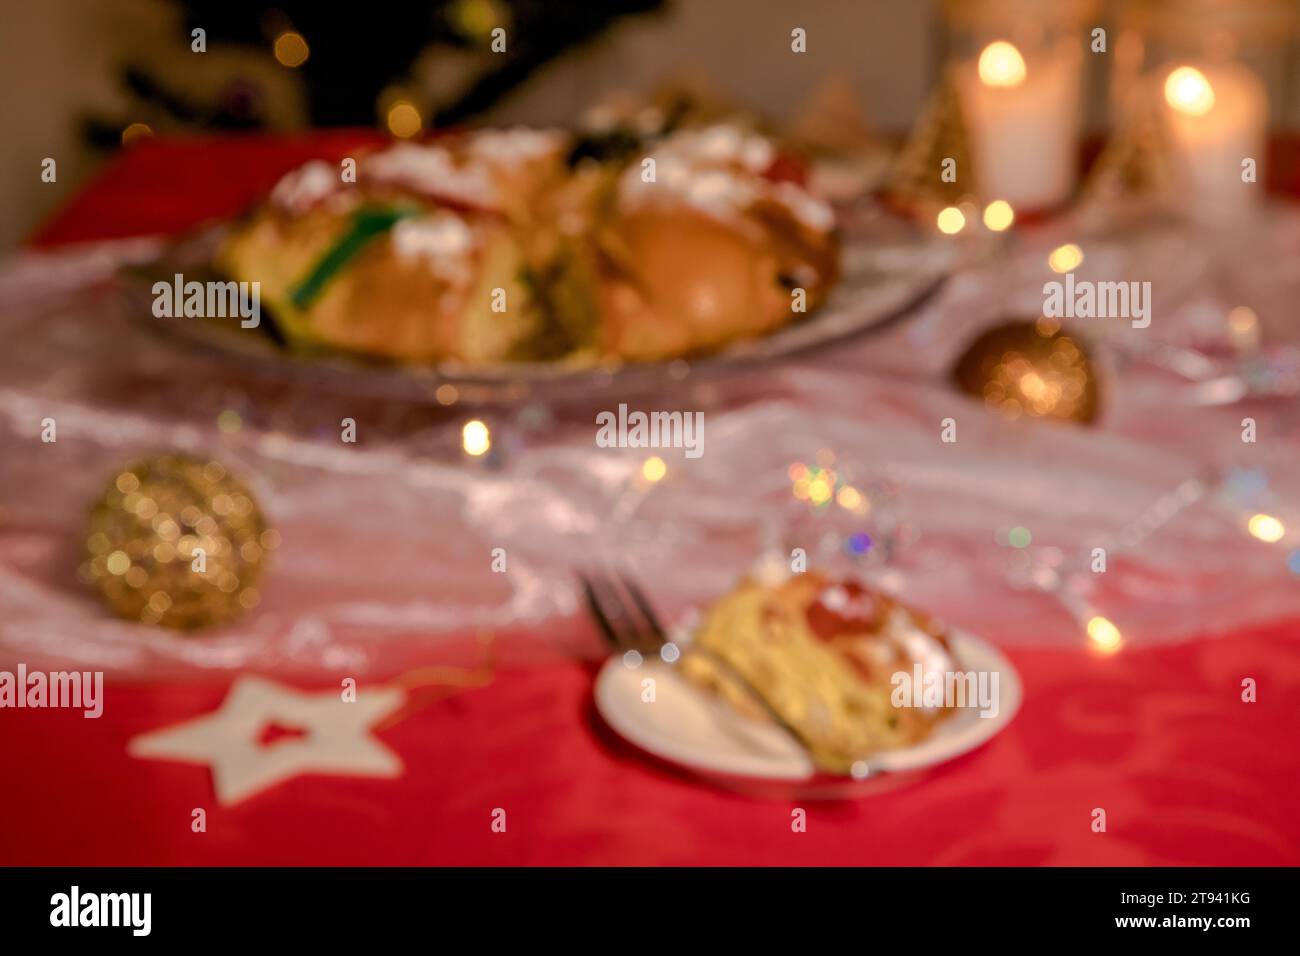 Verschwommenes Bild, das aber einen Tisch darstellt, der in weihnachtlicher Atmosphäre mit Lichtern, Kuchen und Farben der Weihnachtszeit dekoriert ist. Stockfoto